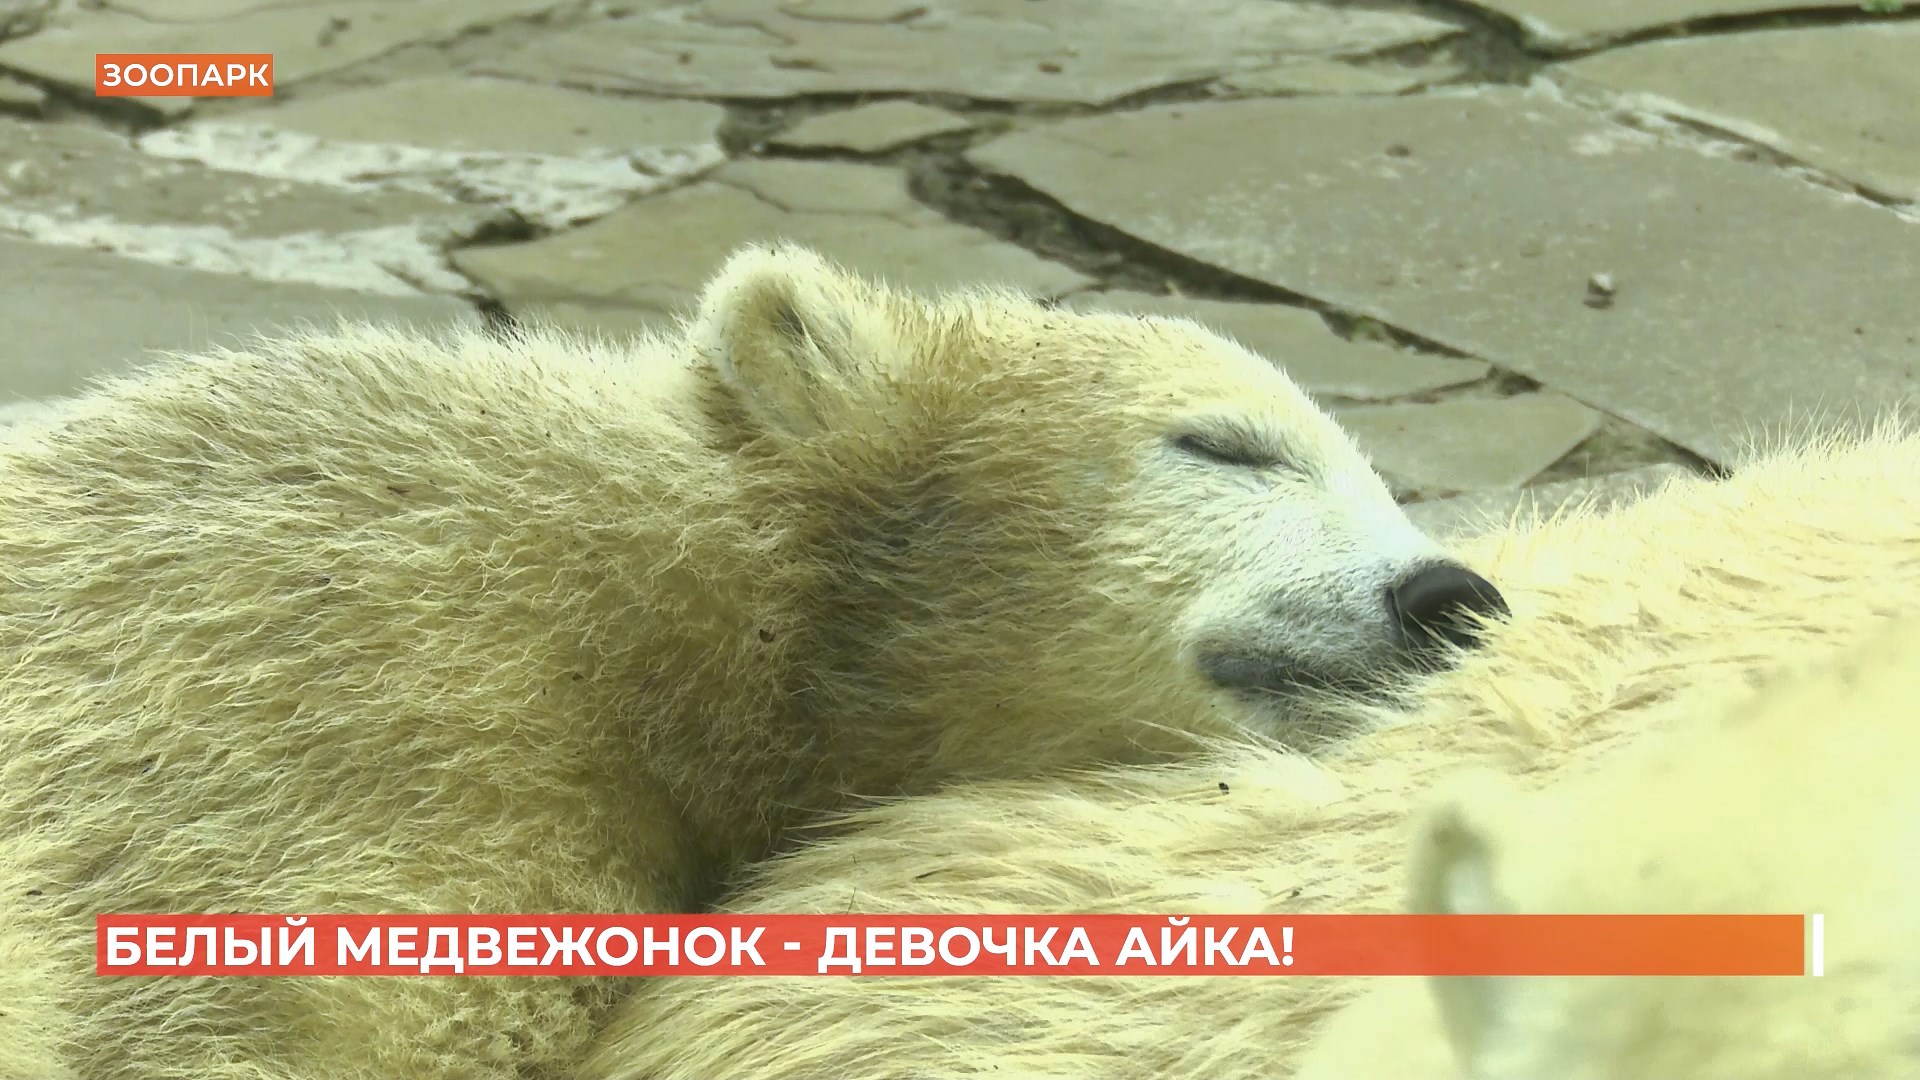 Назвали Айкой: ростовский медвежонок оказался девочкой